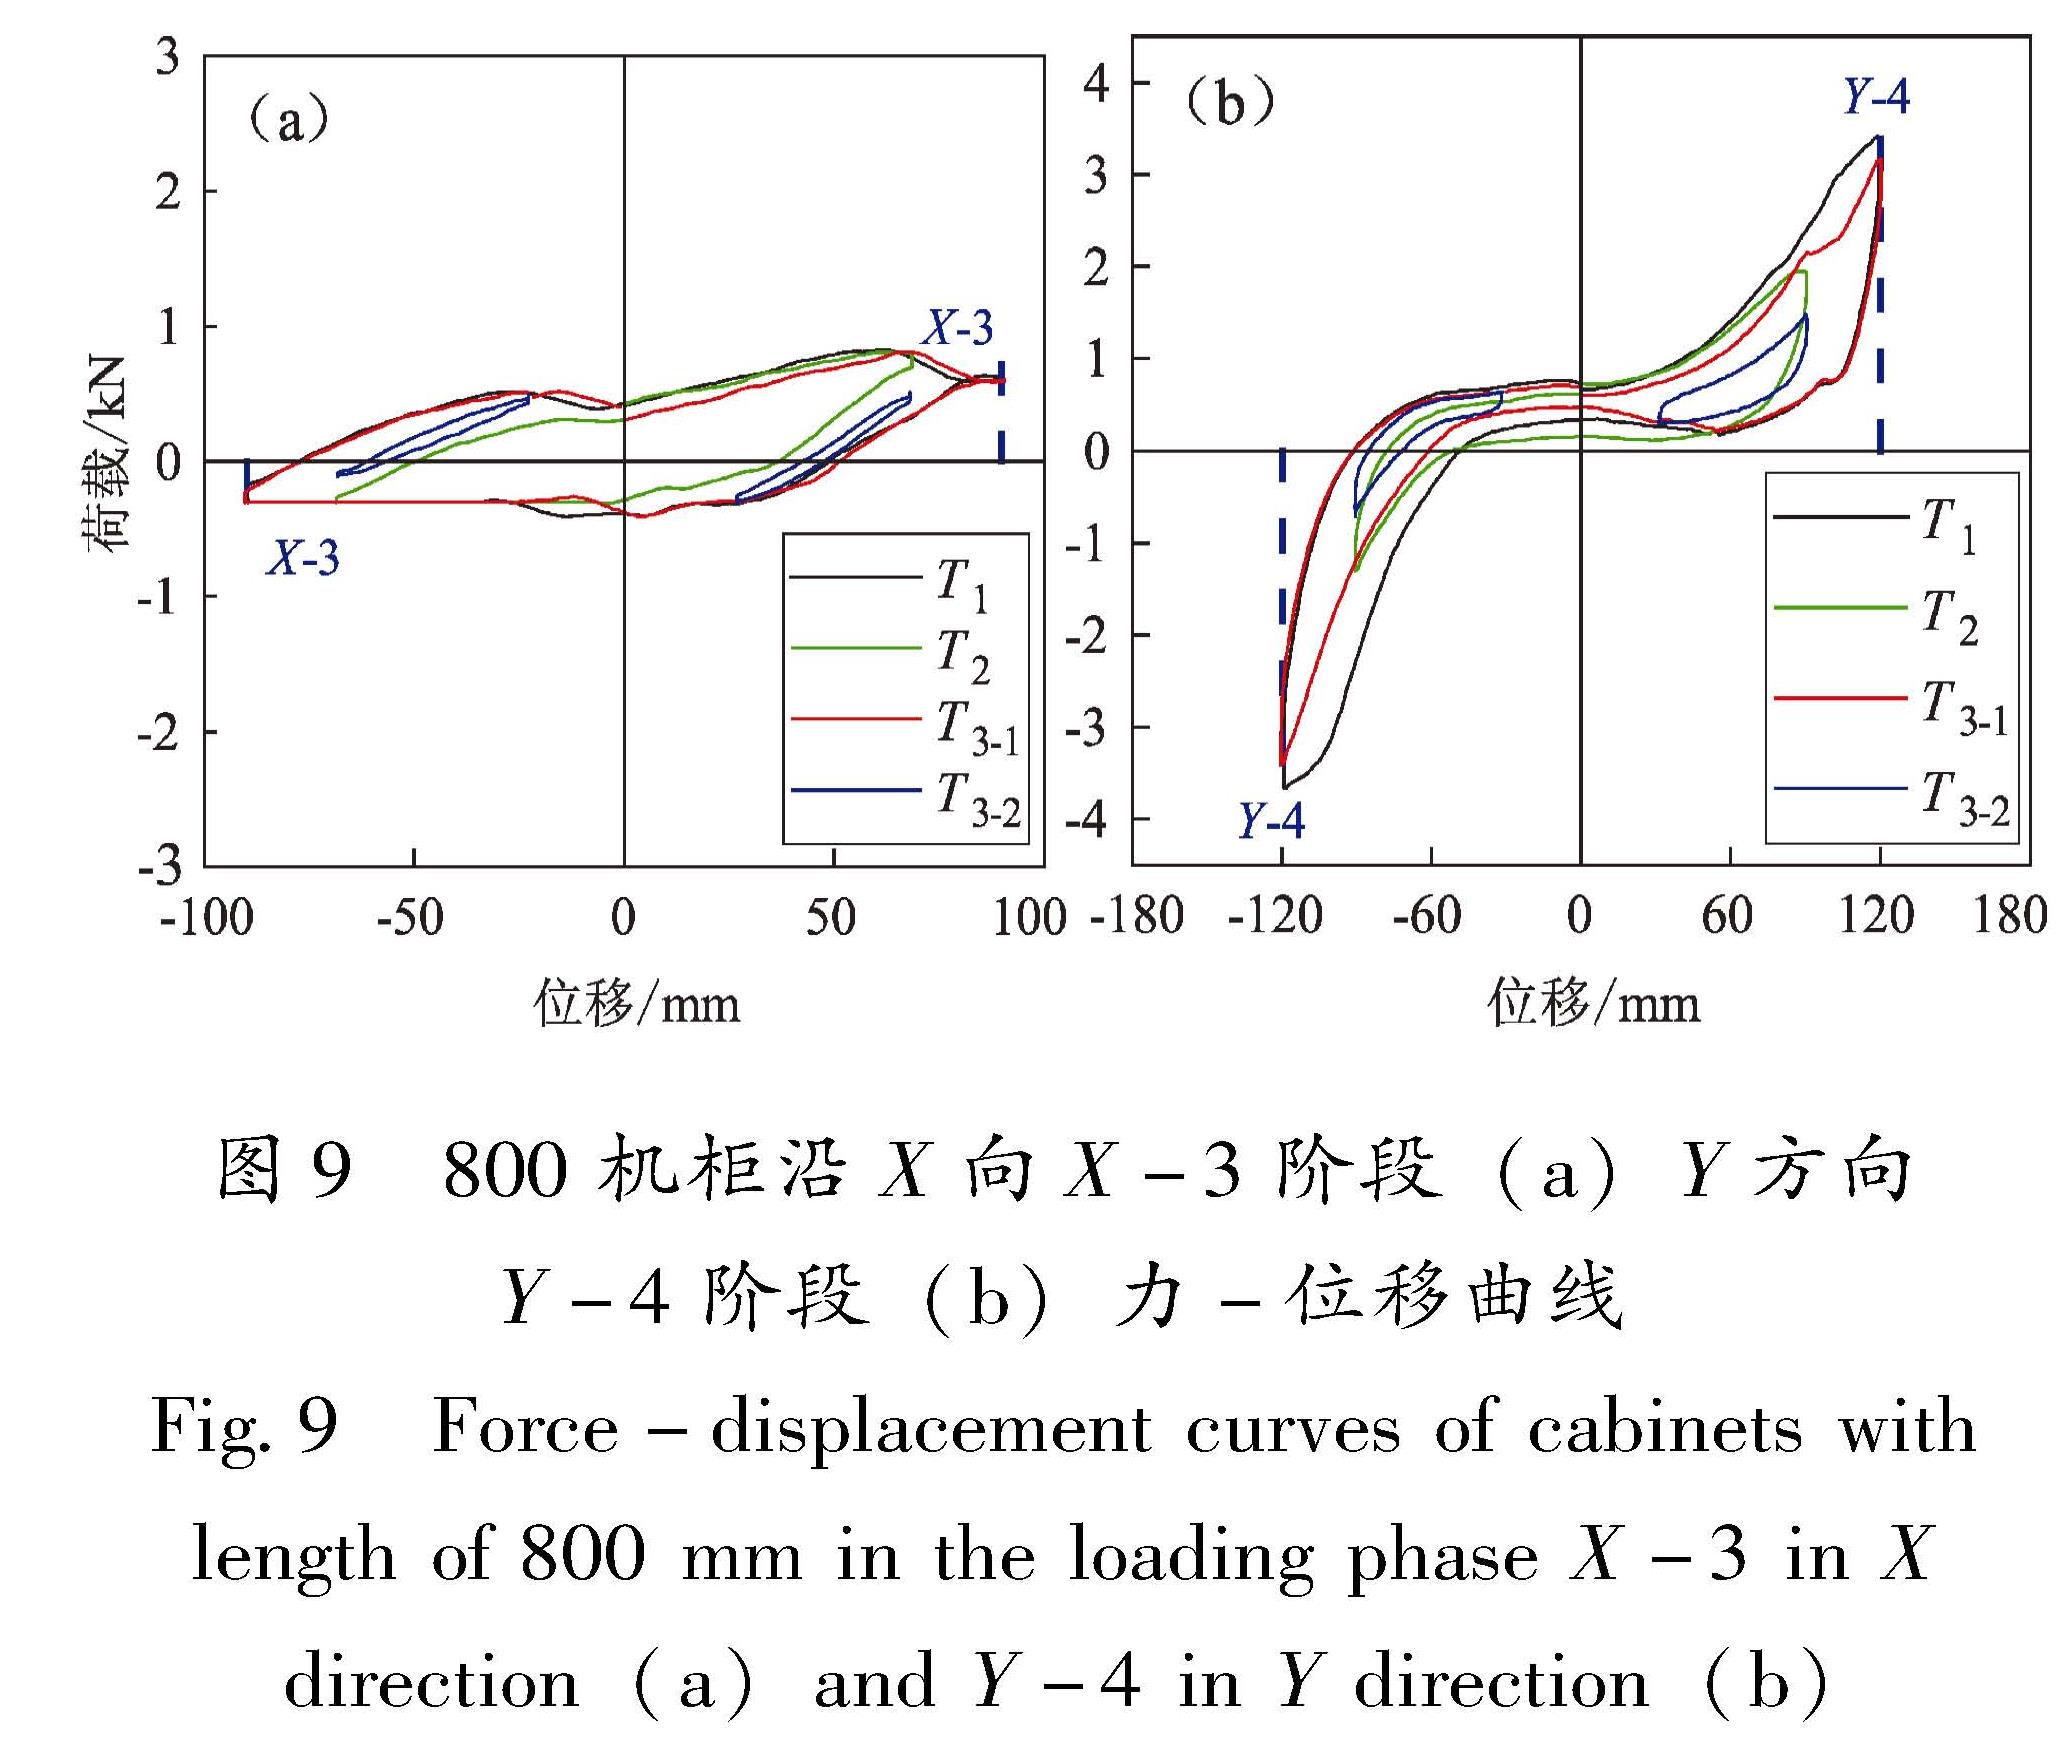 图9 800机柜沿X向X-3阶段(a)Y方向Y-4阶段(b)力-位移曲线<br/>Fig.9 Force-displacement curves of cabinets with length of 800 mm in the loading phase X-3 in X direction(a)and Y-4 in Y direction(b)[HT]